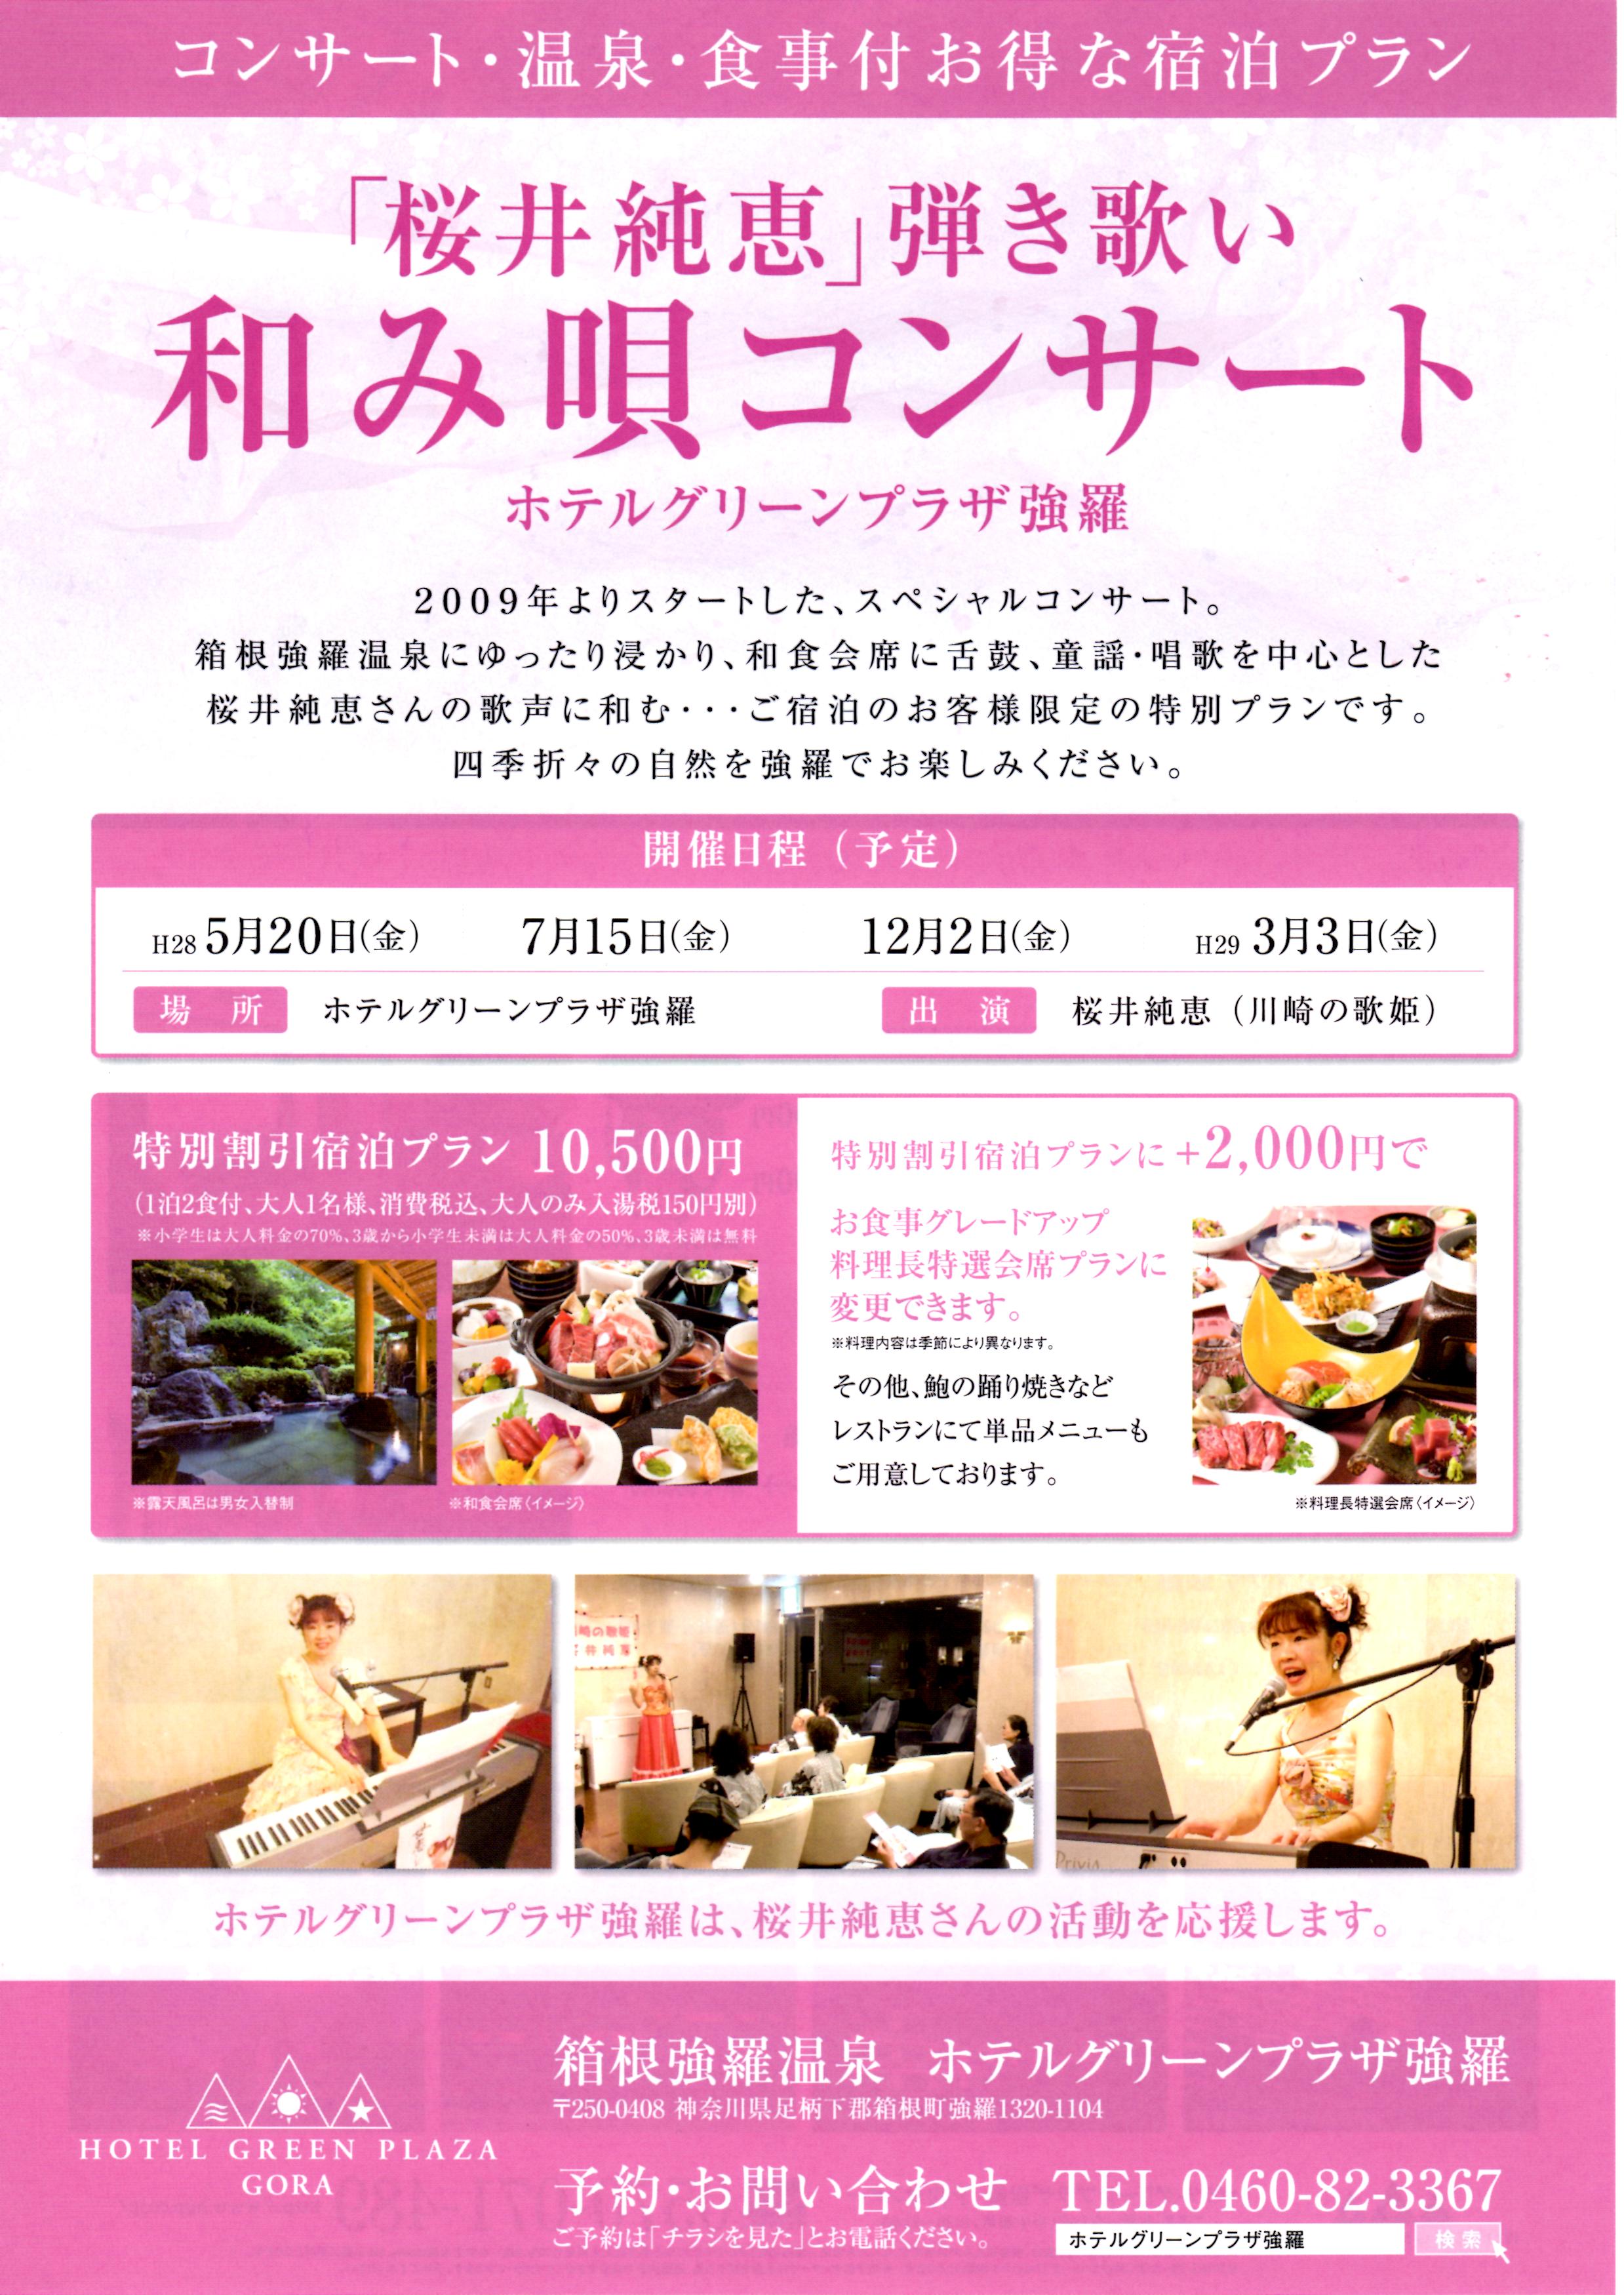 コンサート 3月3日 和み唄コンサート 開催されます 桜井純恵のホームページ